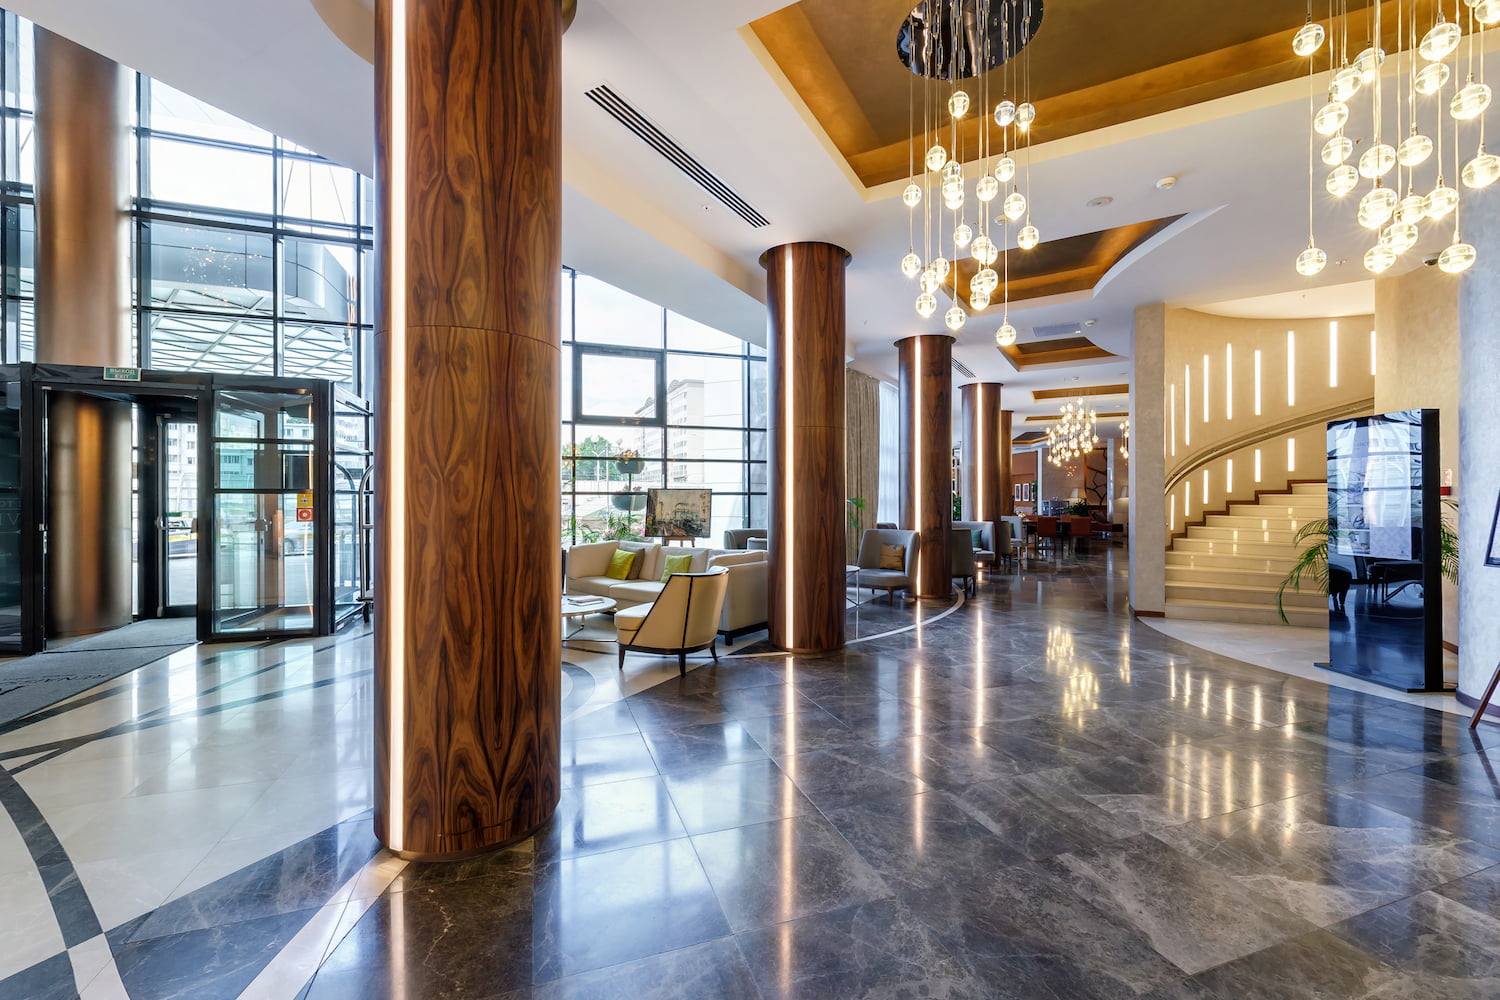 Salão de hotel com colunas, lustres, porta giratória e arquitetura de luxo.